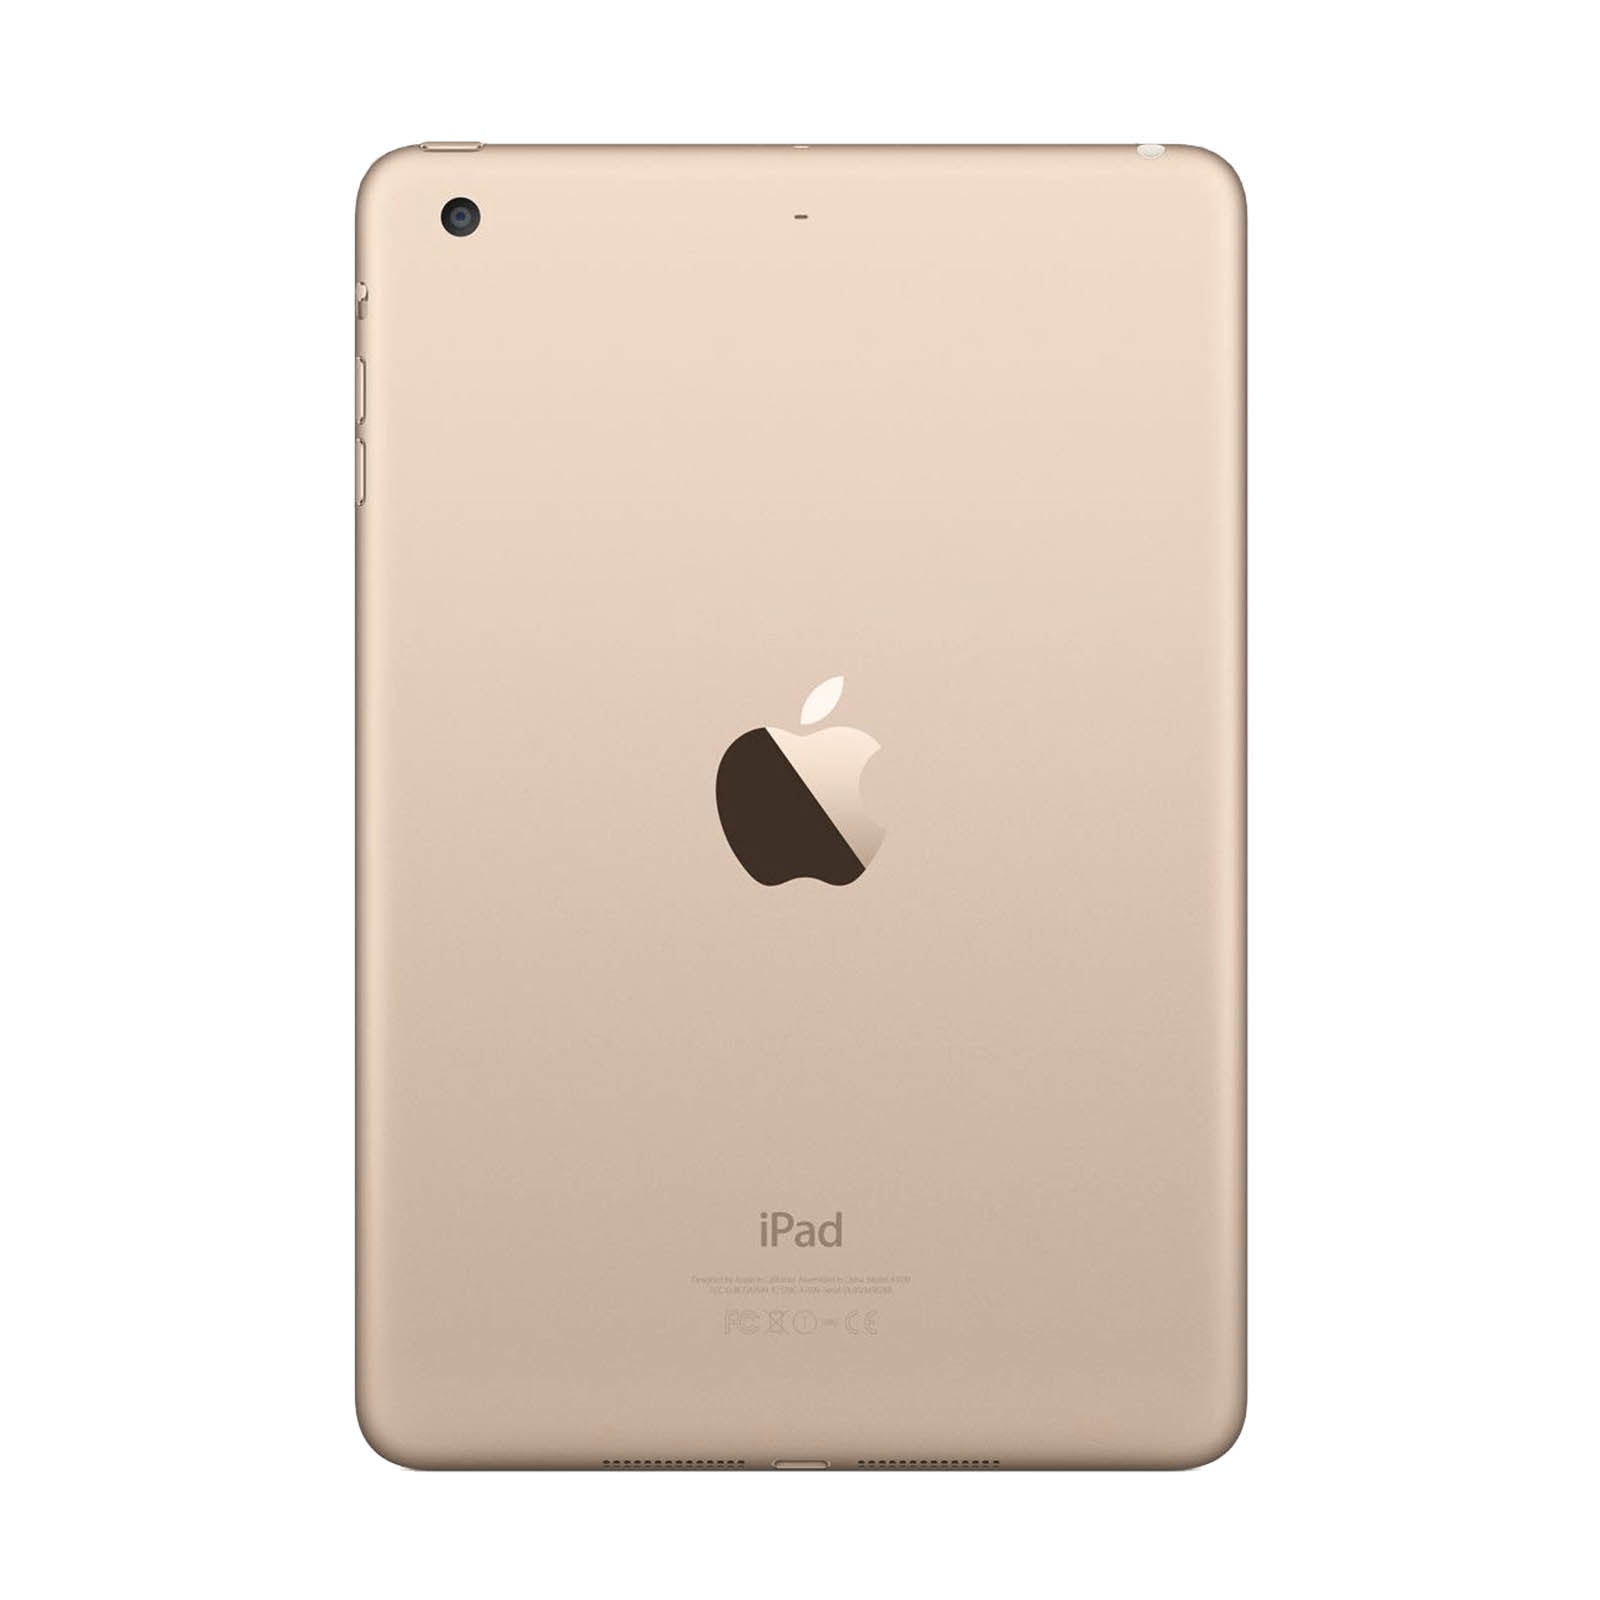 iPad Mini 3 64GB WiFi - Grade C Gold Gut WiFi